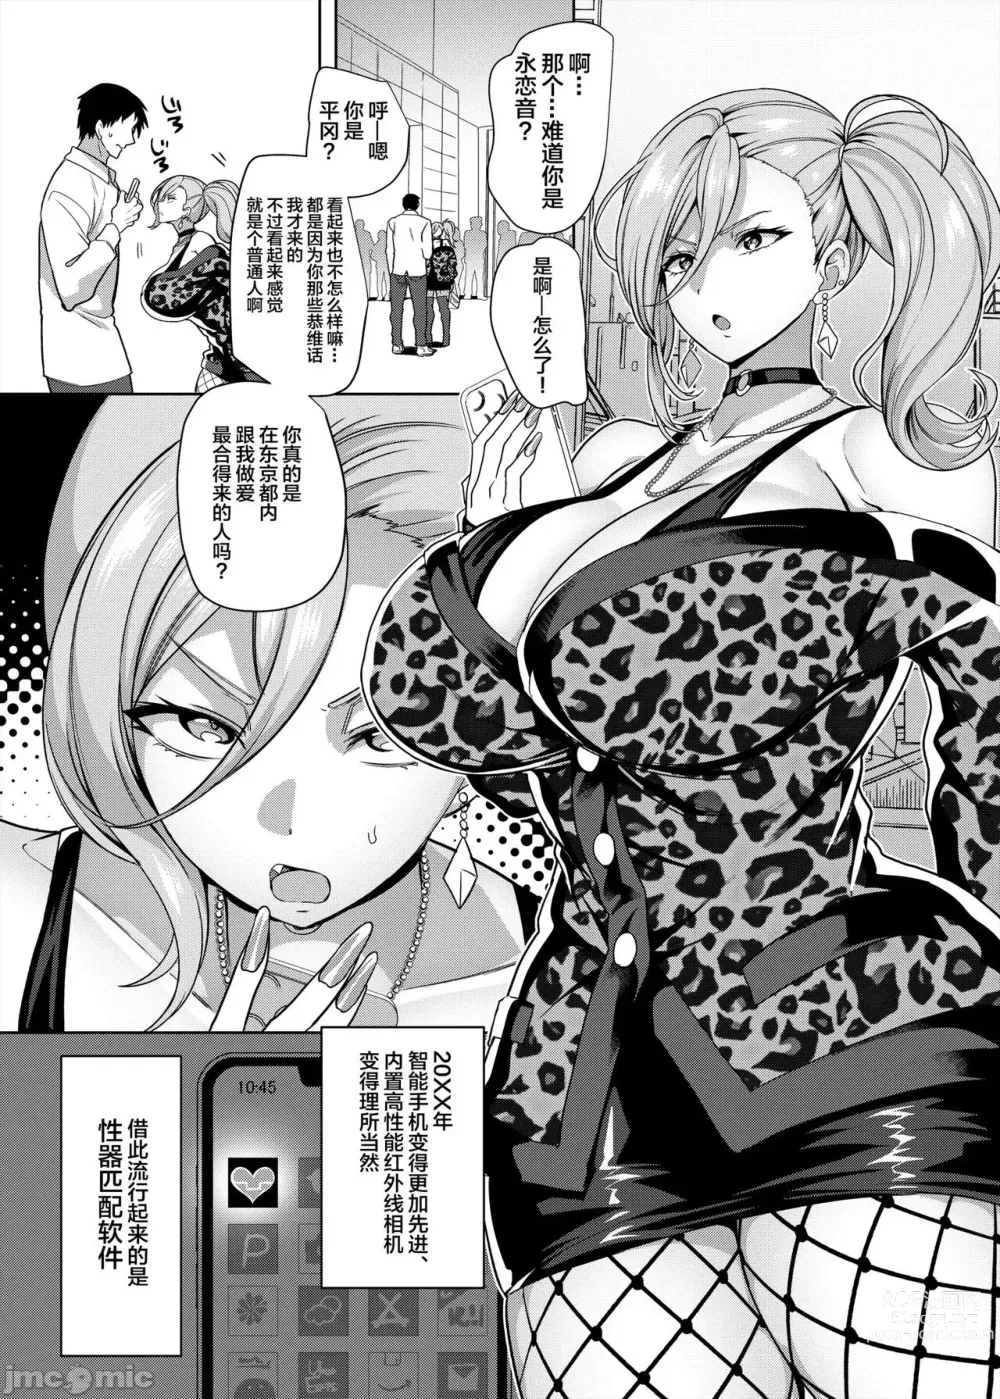 Page 2 of doujinshi 性器マッチングアプリで出会った体の相性だけは最高の女 1-2